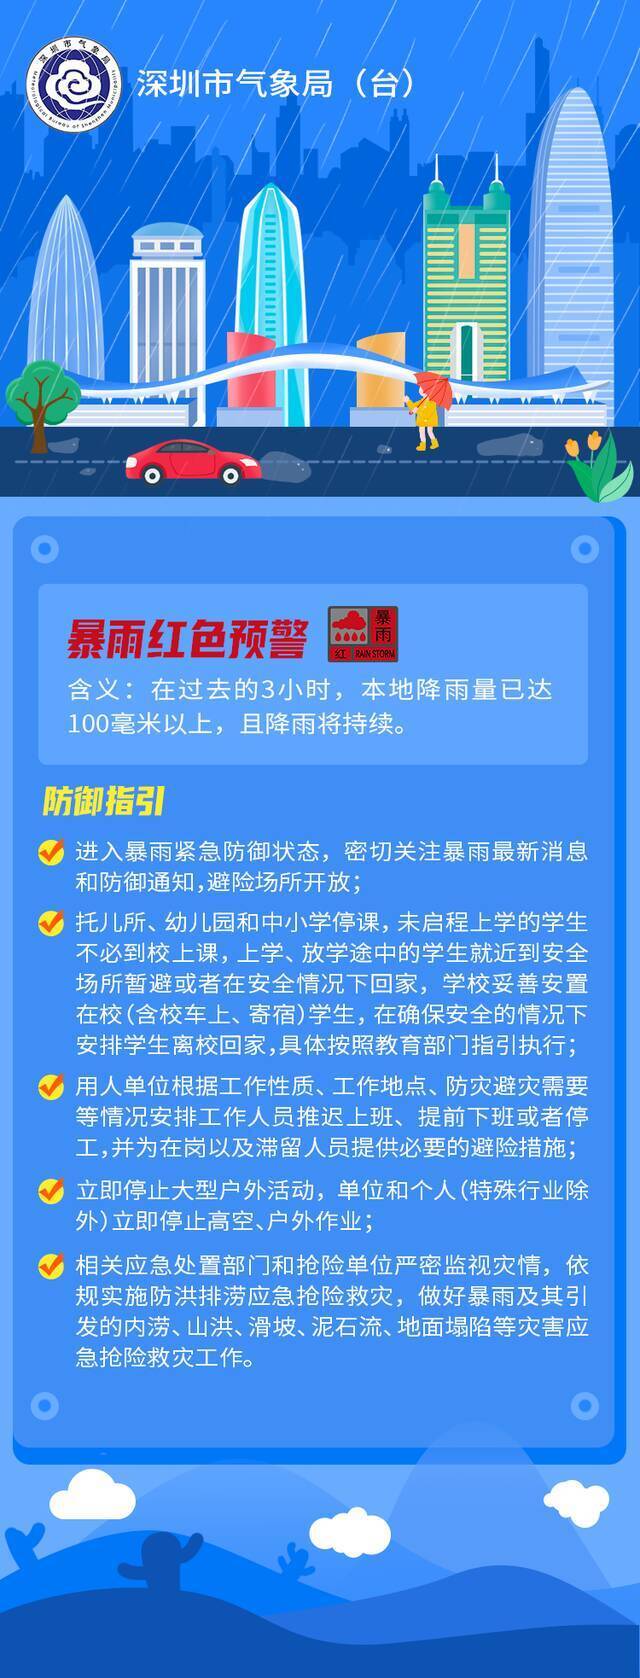 深圳进入暴雨紧急防御状态 全市托儿所、幼儿园和中小学停课